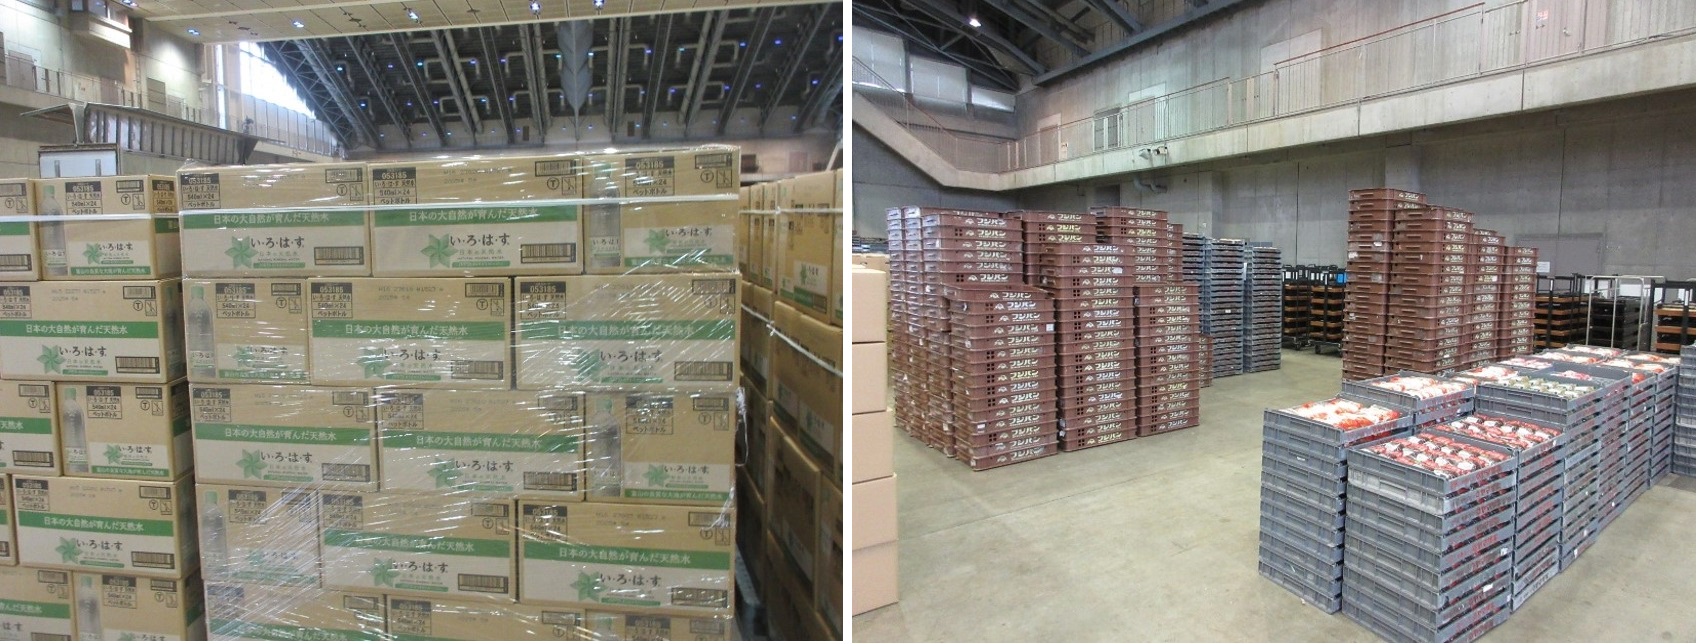 石川県の支援物資集積場に到着した食料など(農水省提供、撮影日1月3日)